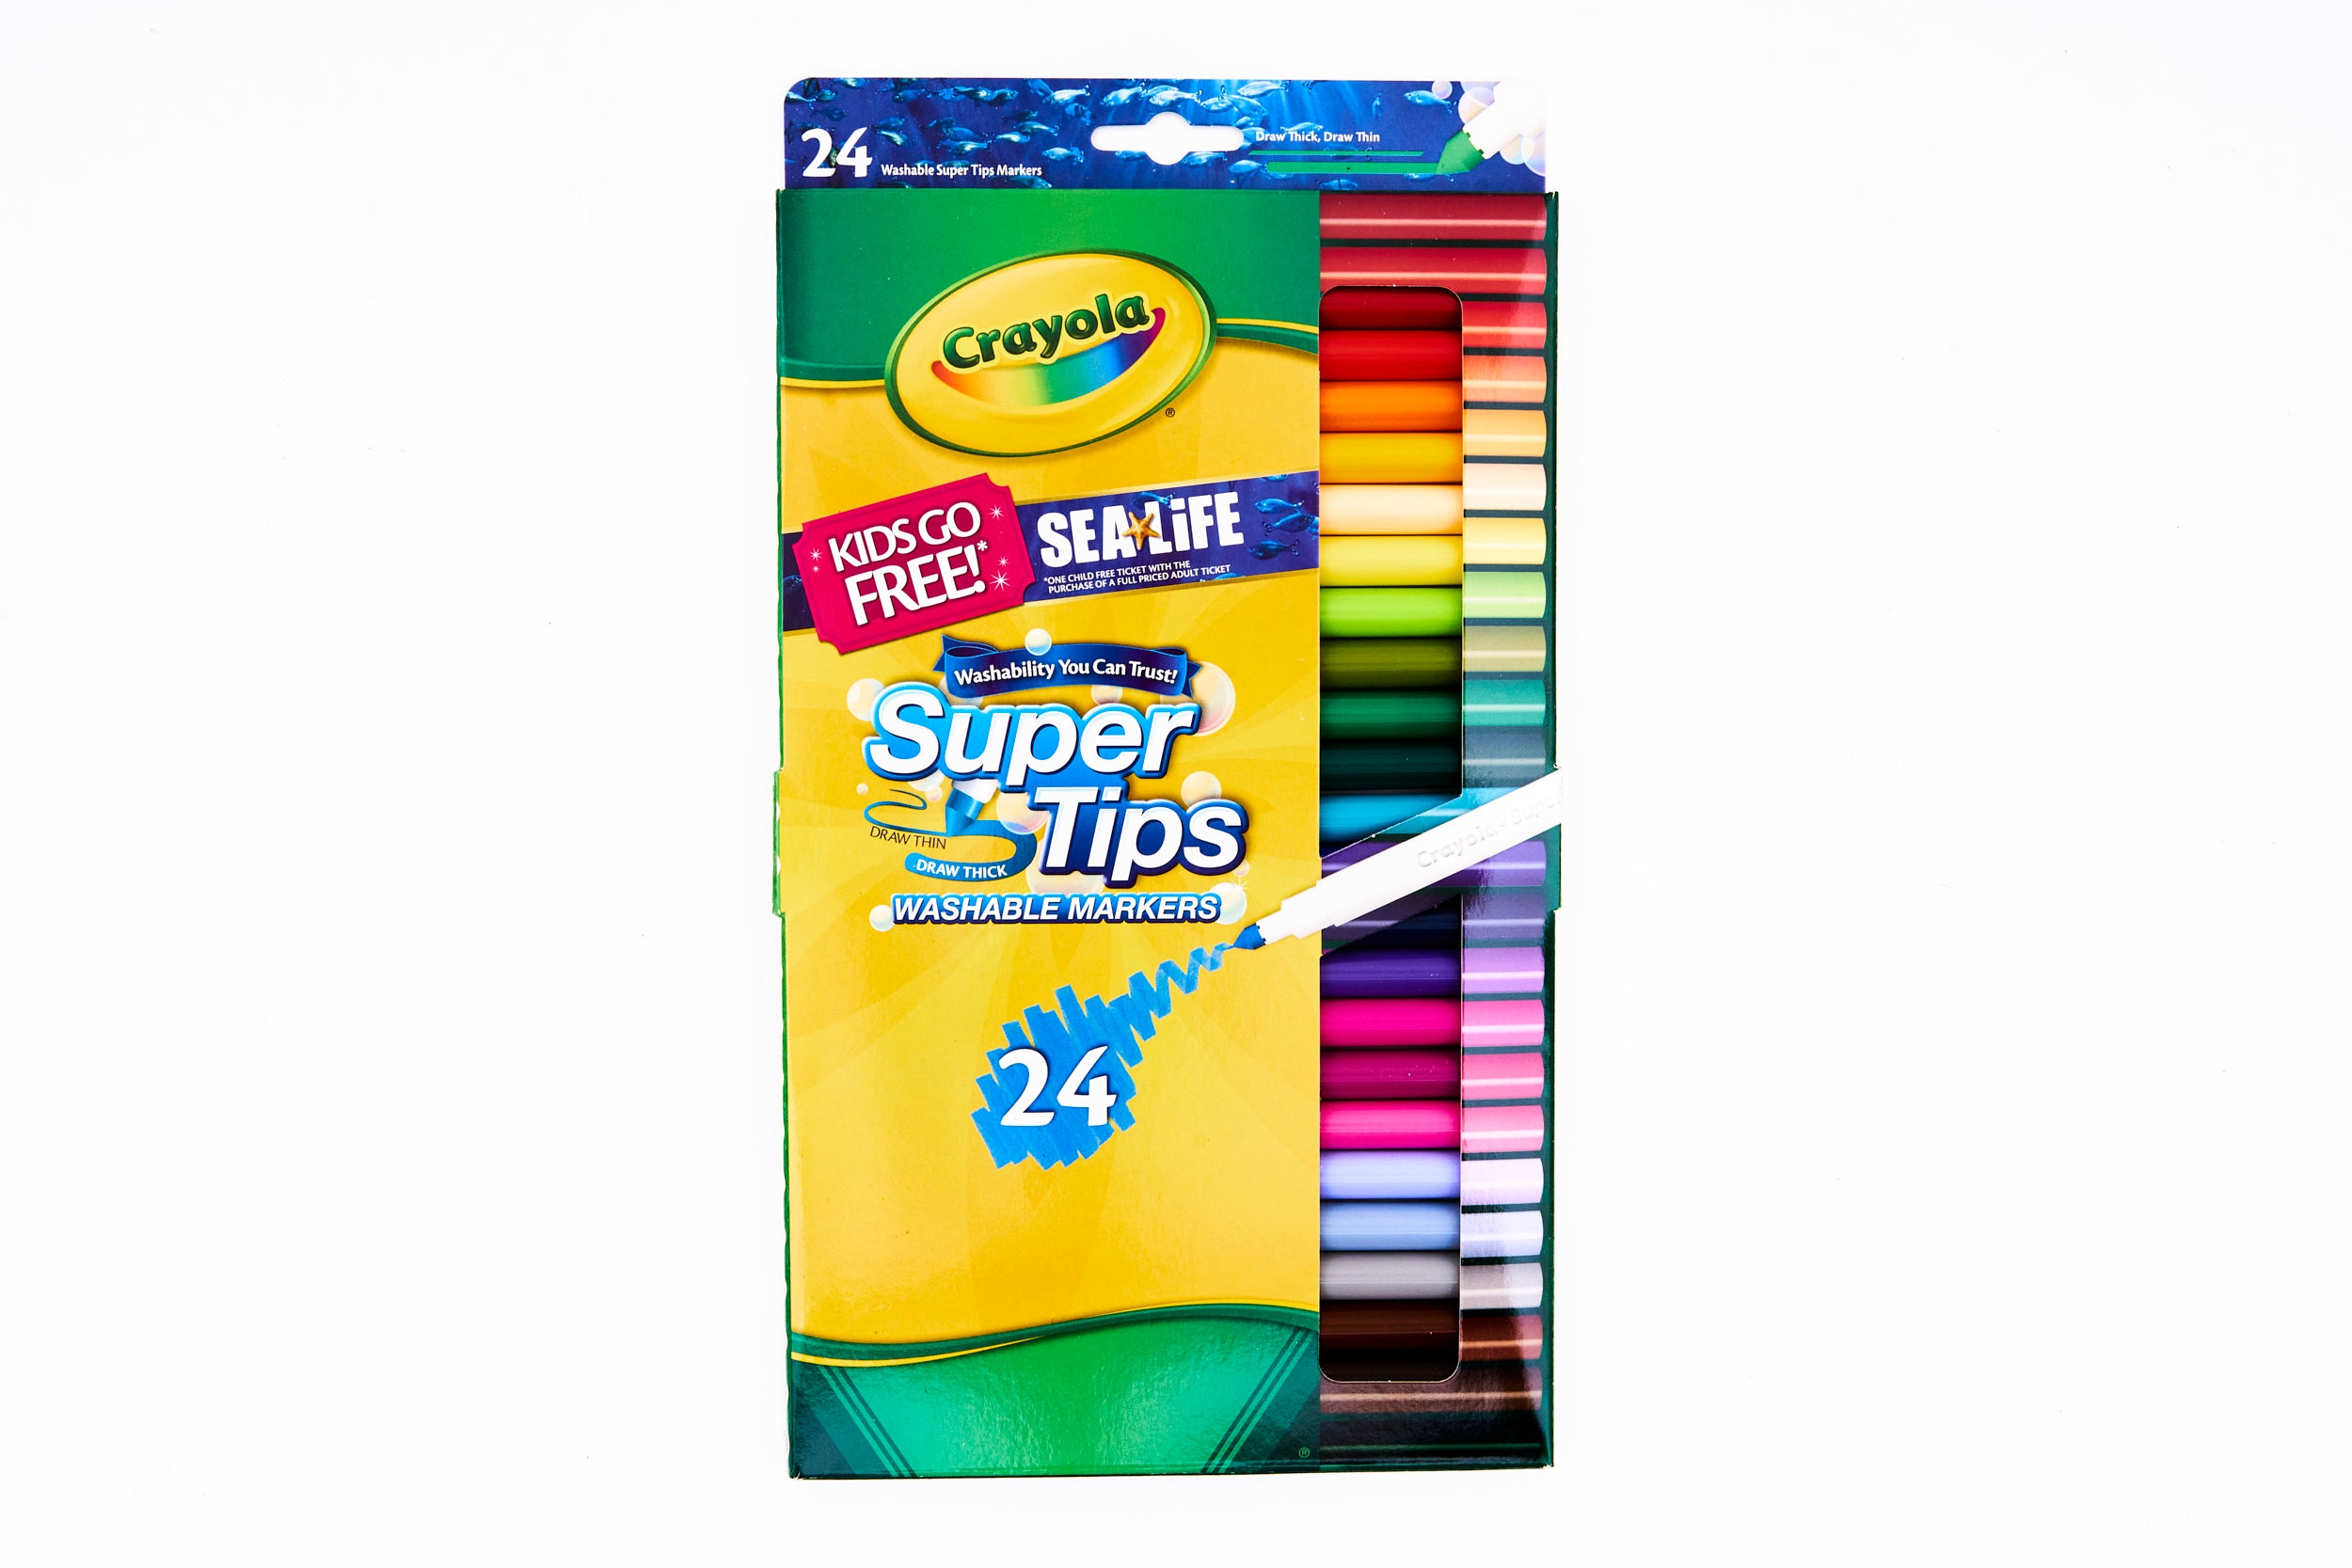 Crayola - Crayola Bath Squirters (5 count), Shop